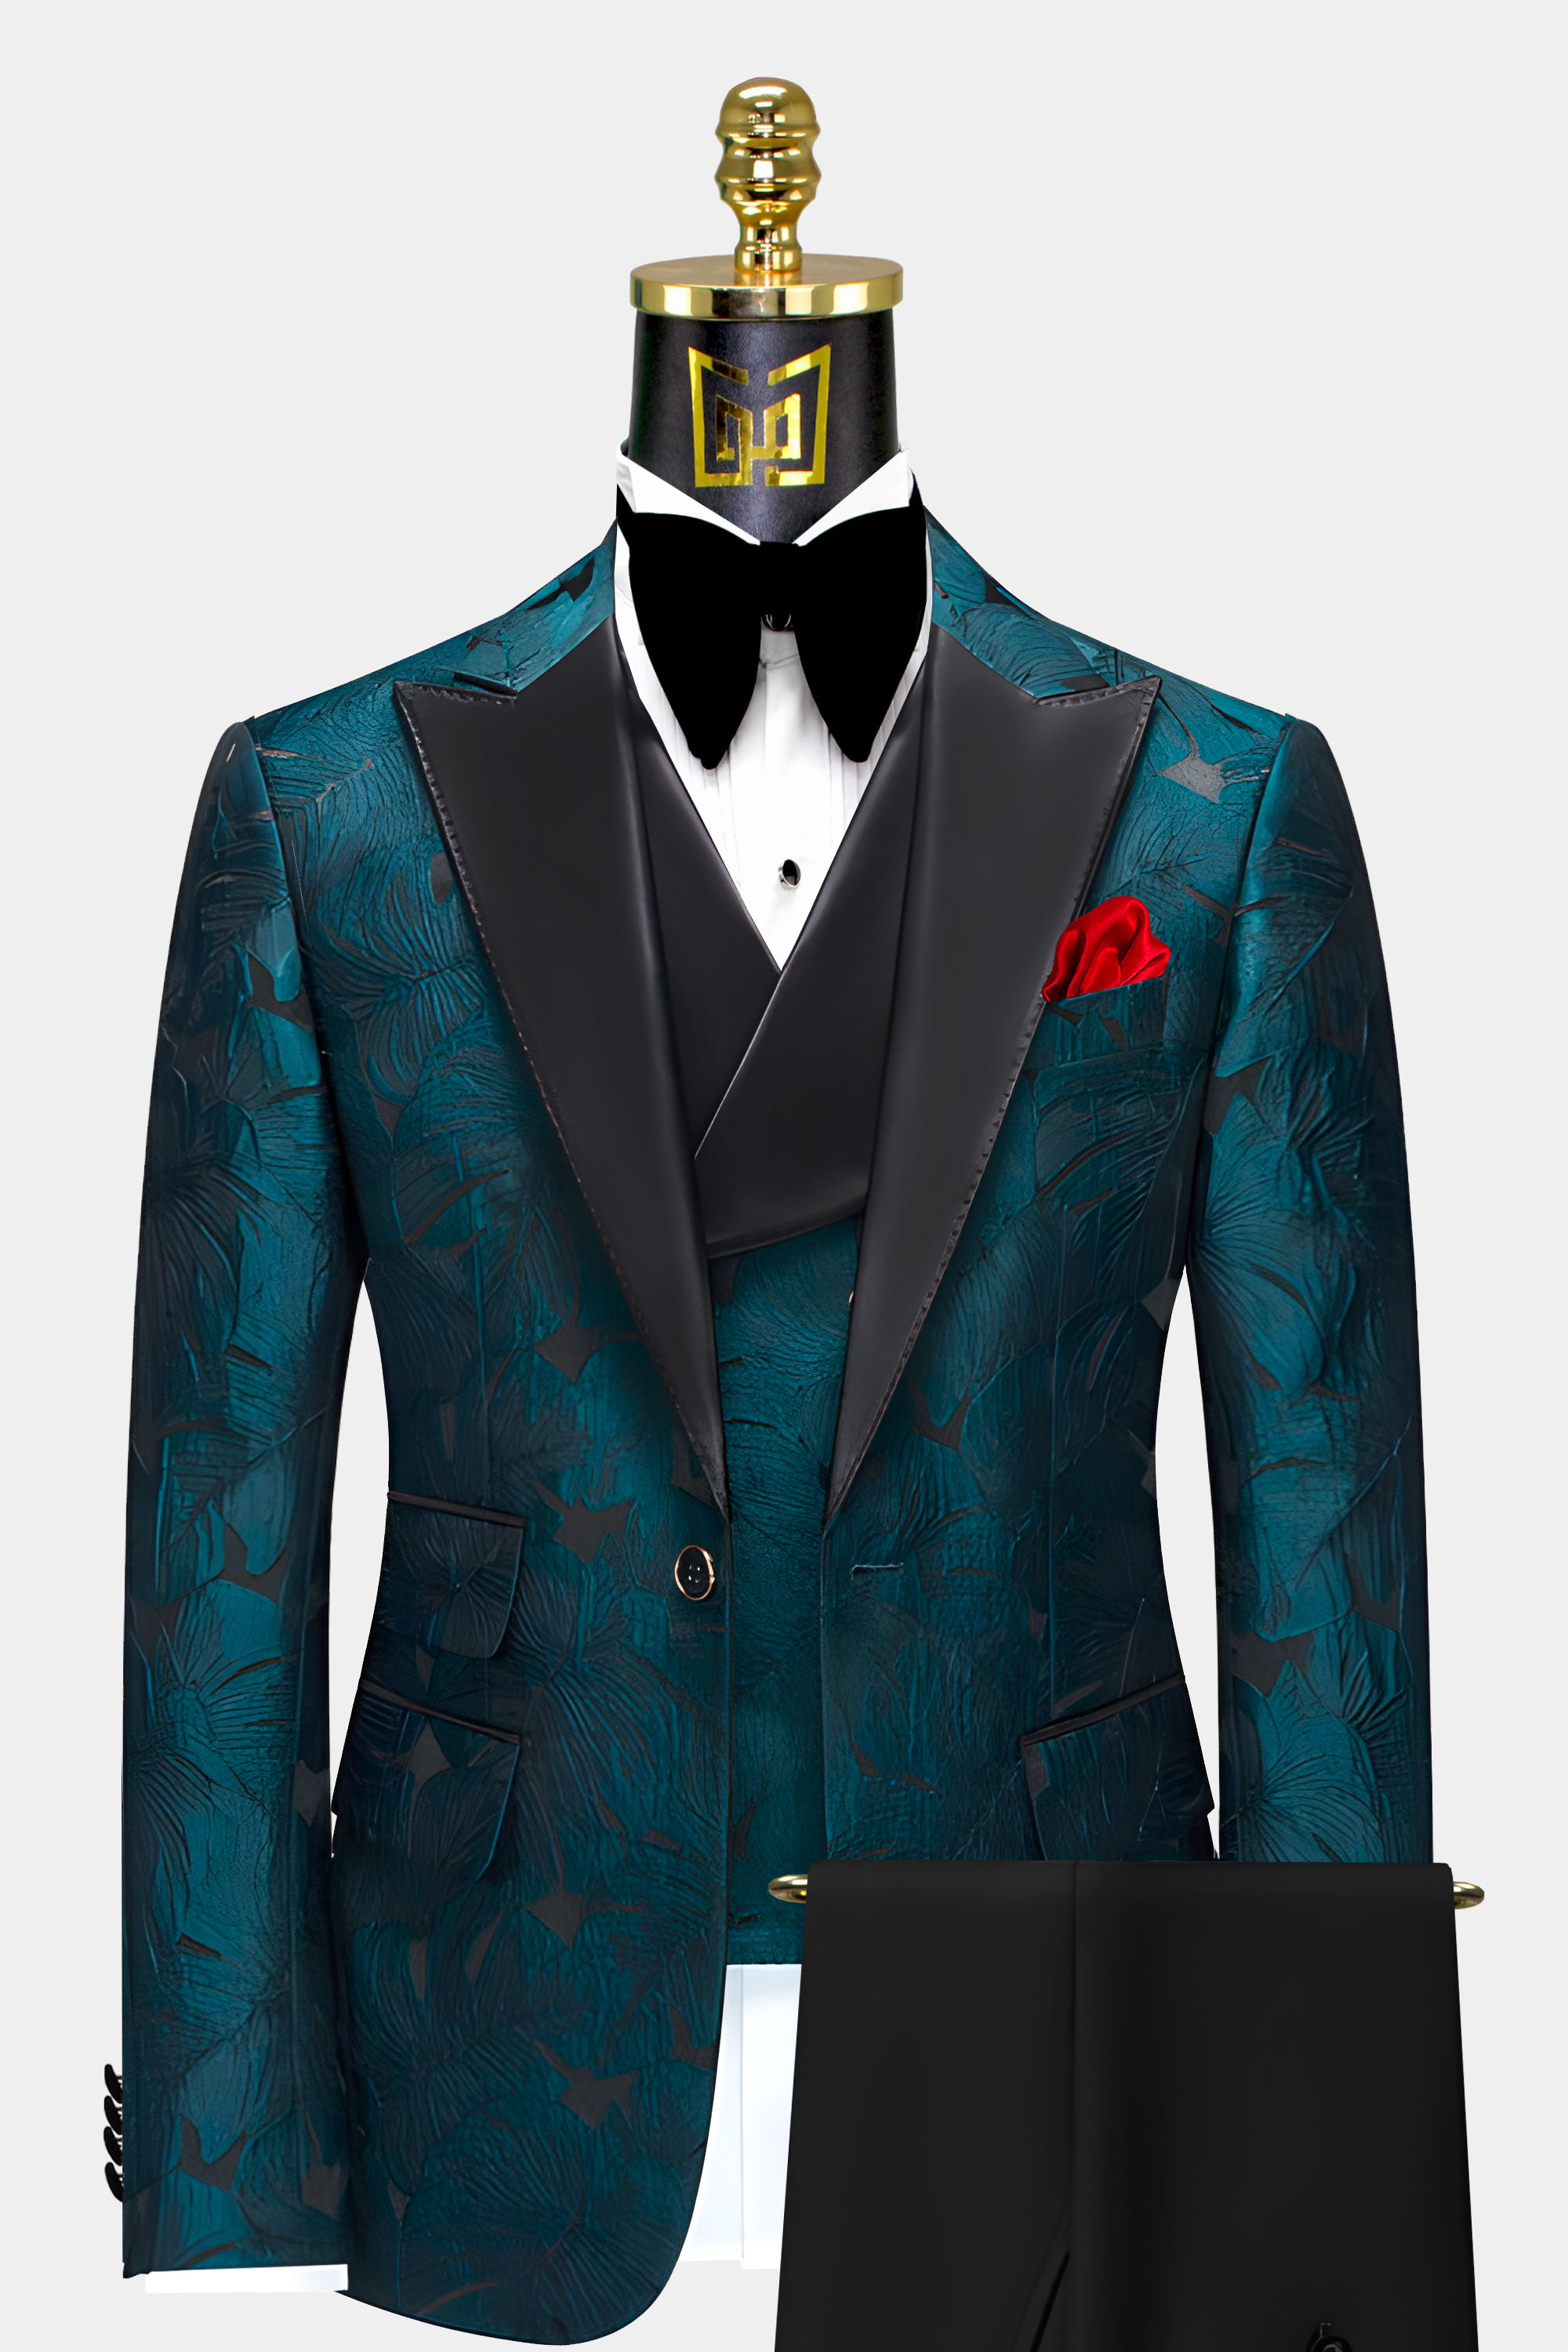 Black-and-Dark-Teal-Tuxedo-prom-Wedding-Groom-Suit-from-Gentlemansguru.com